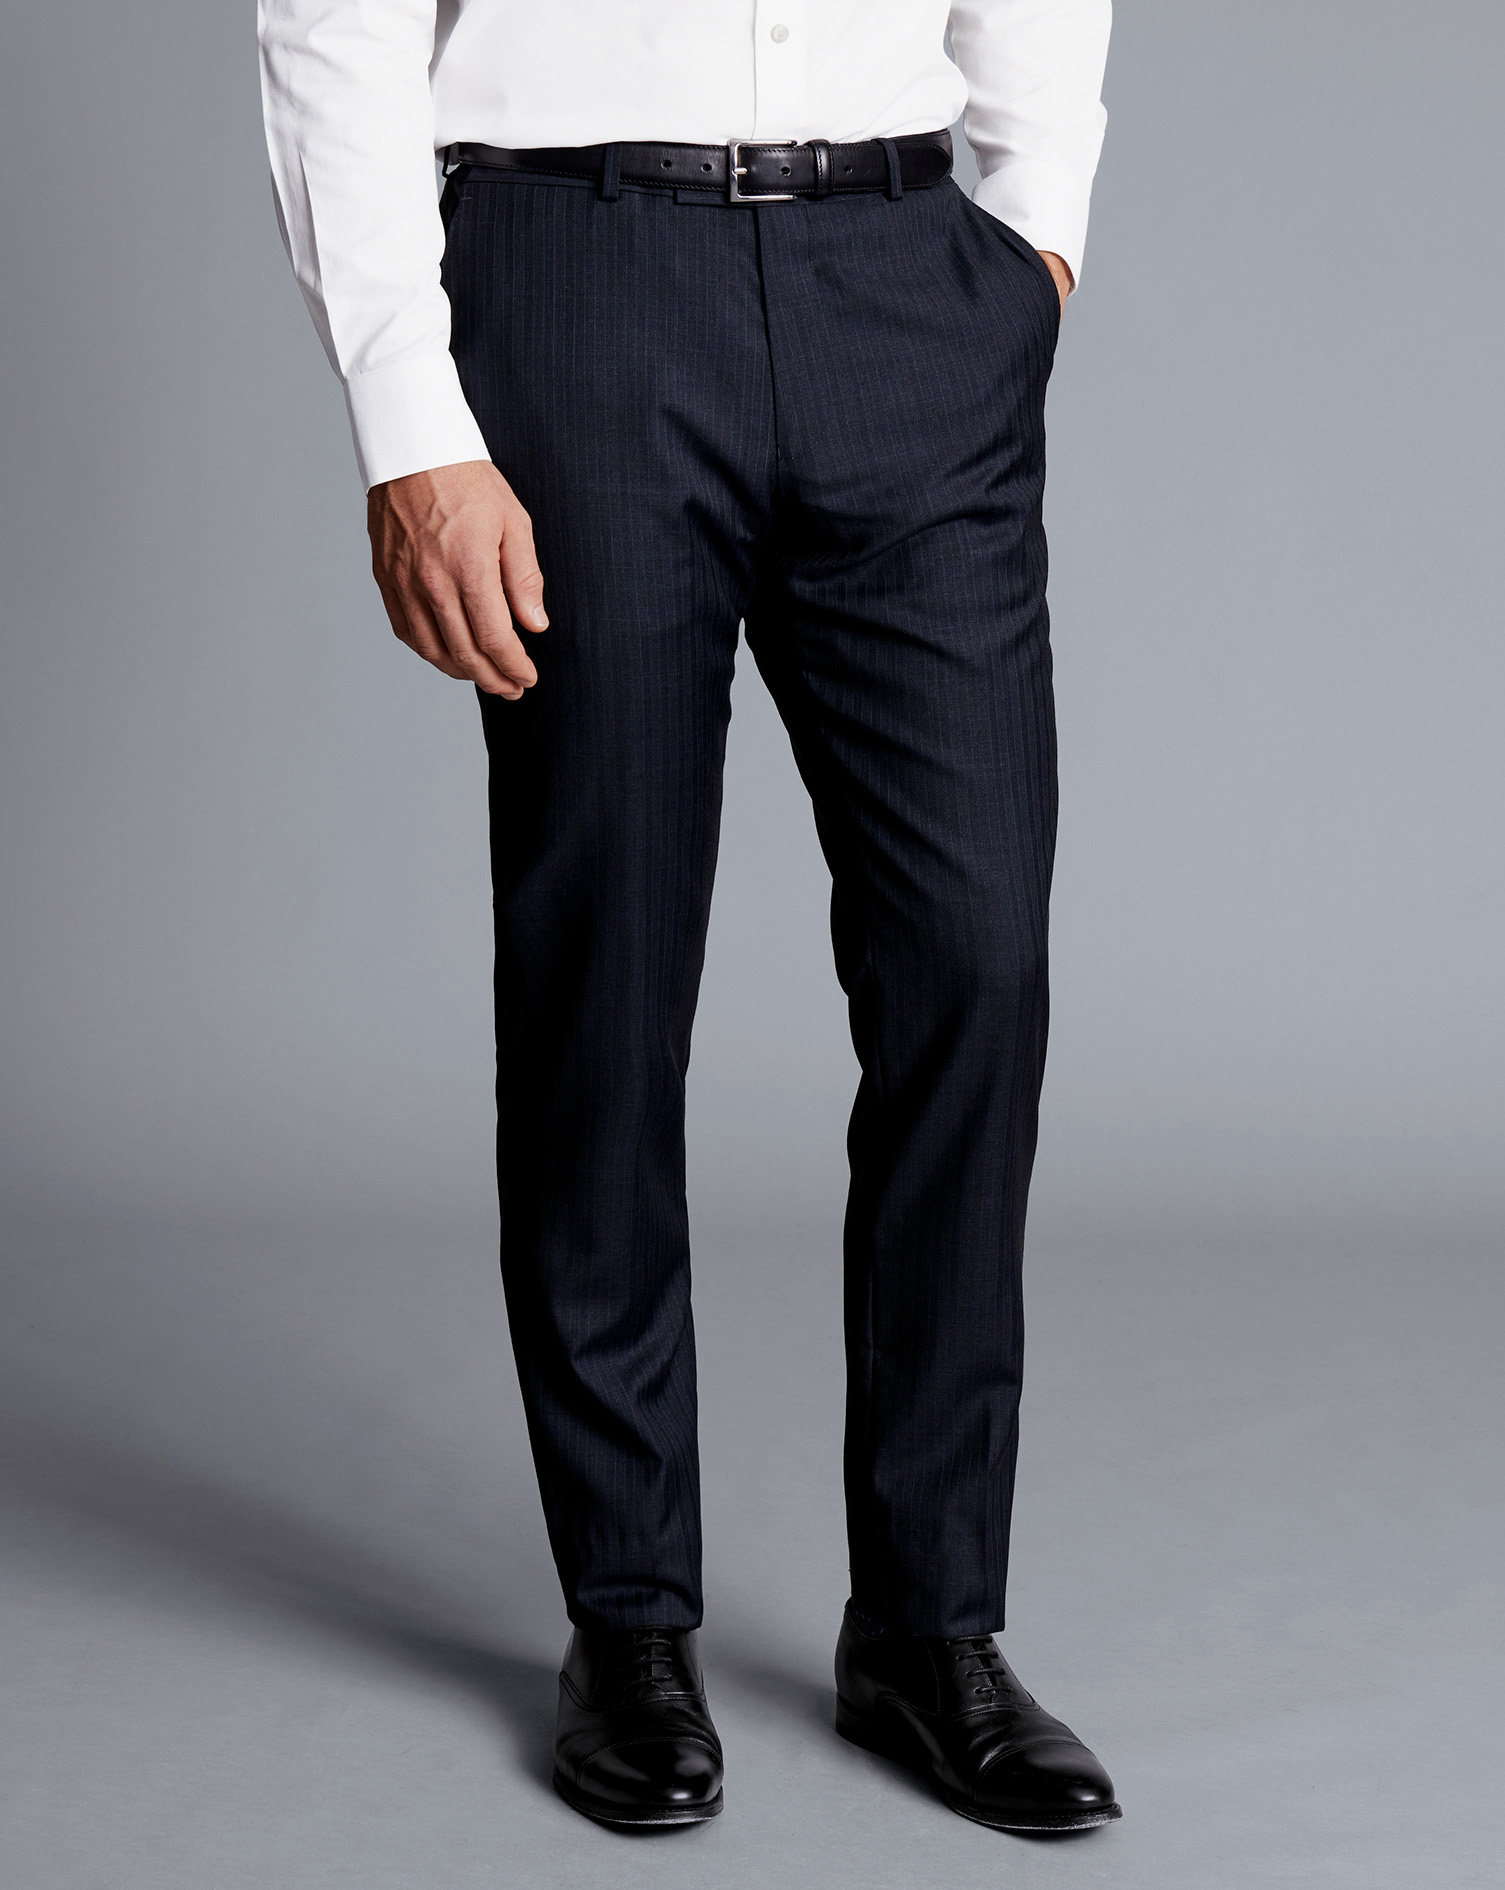 Men's Charles Tyrwhitt Stripe Suit Trousers - Ink Blue Size 36/38 Wool
